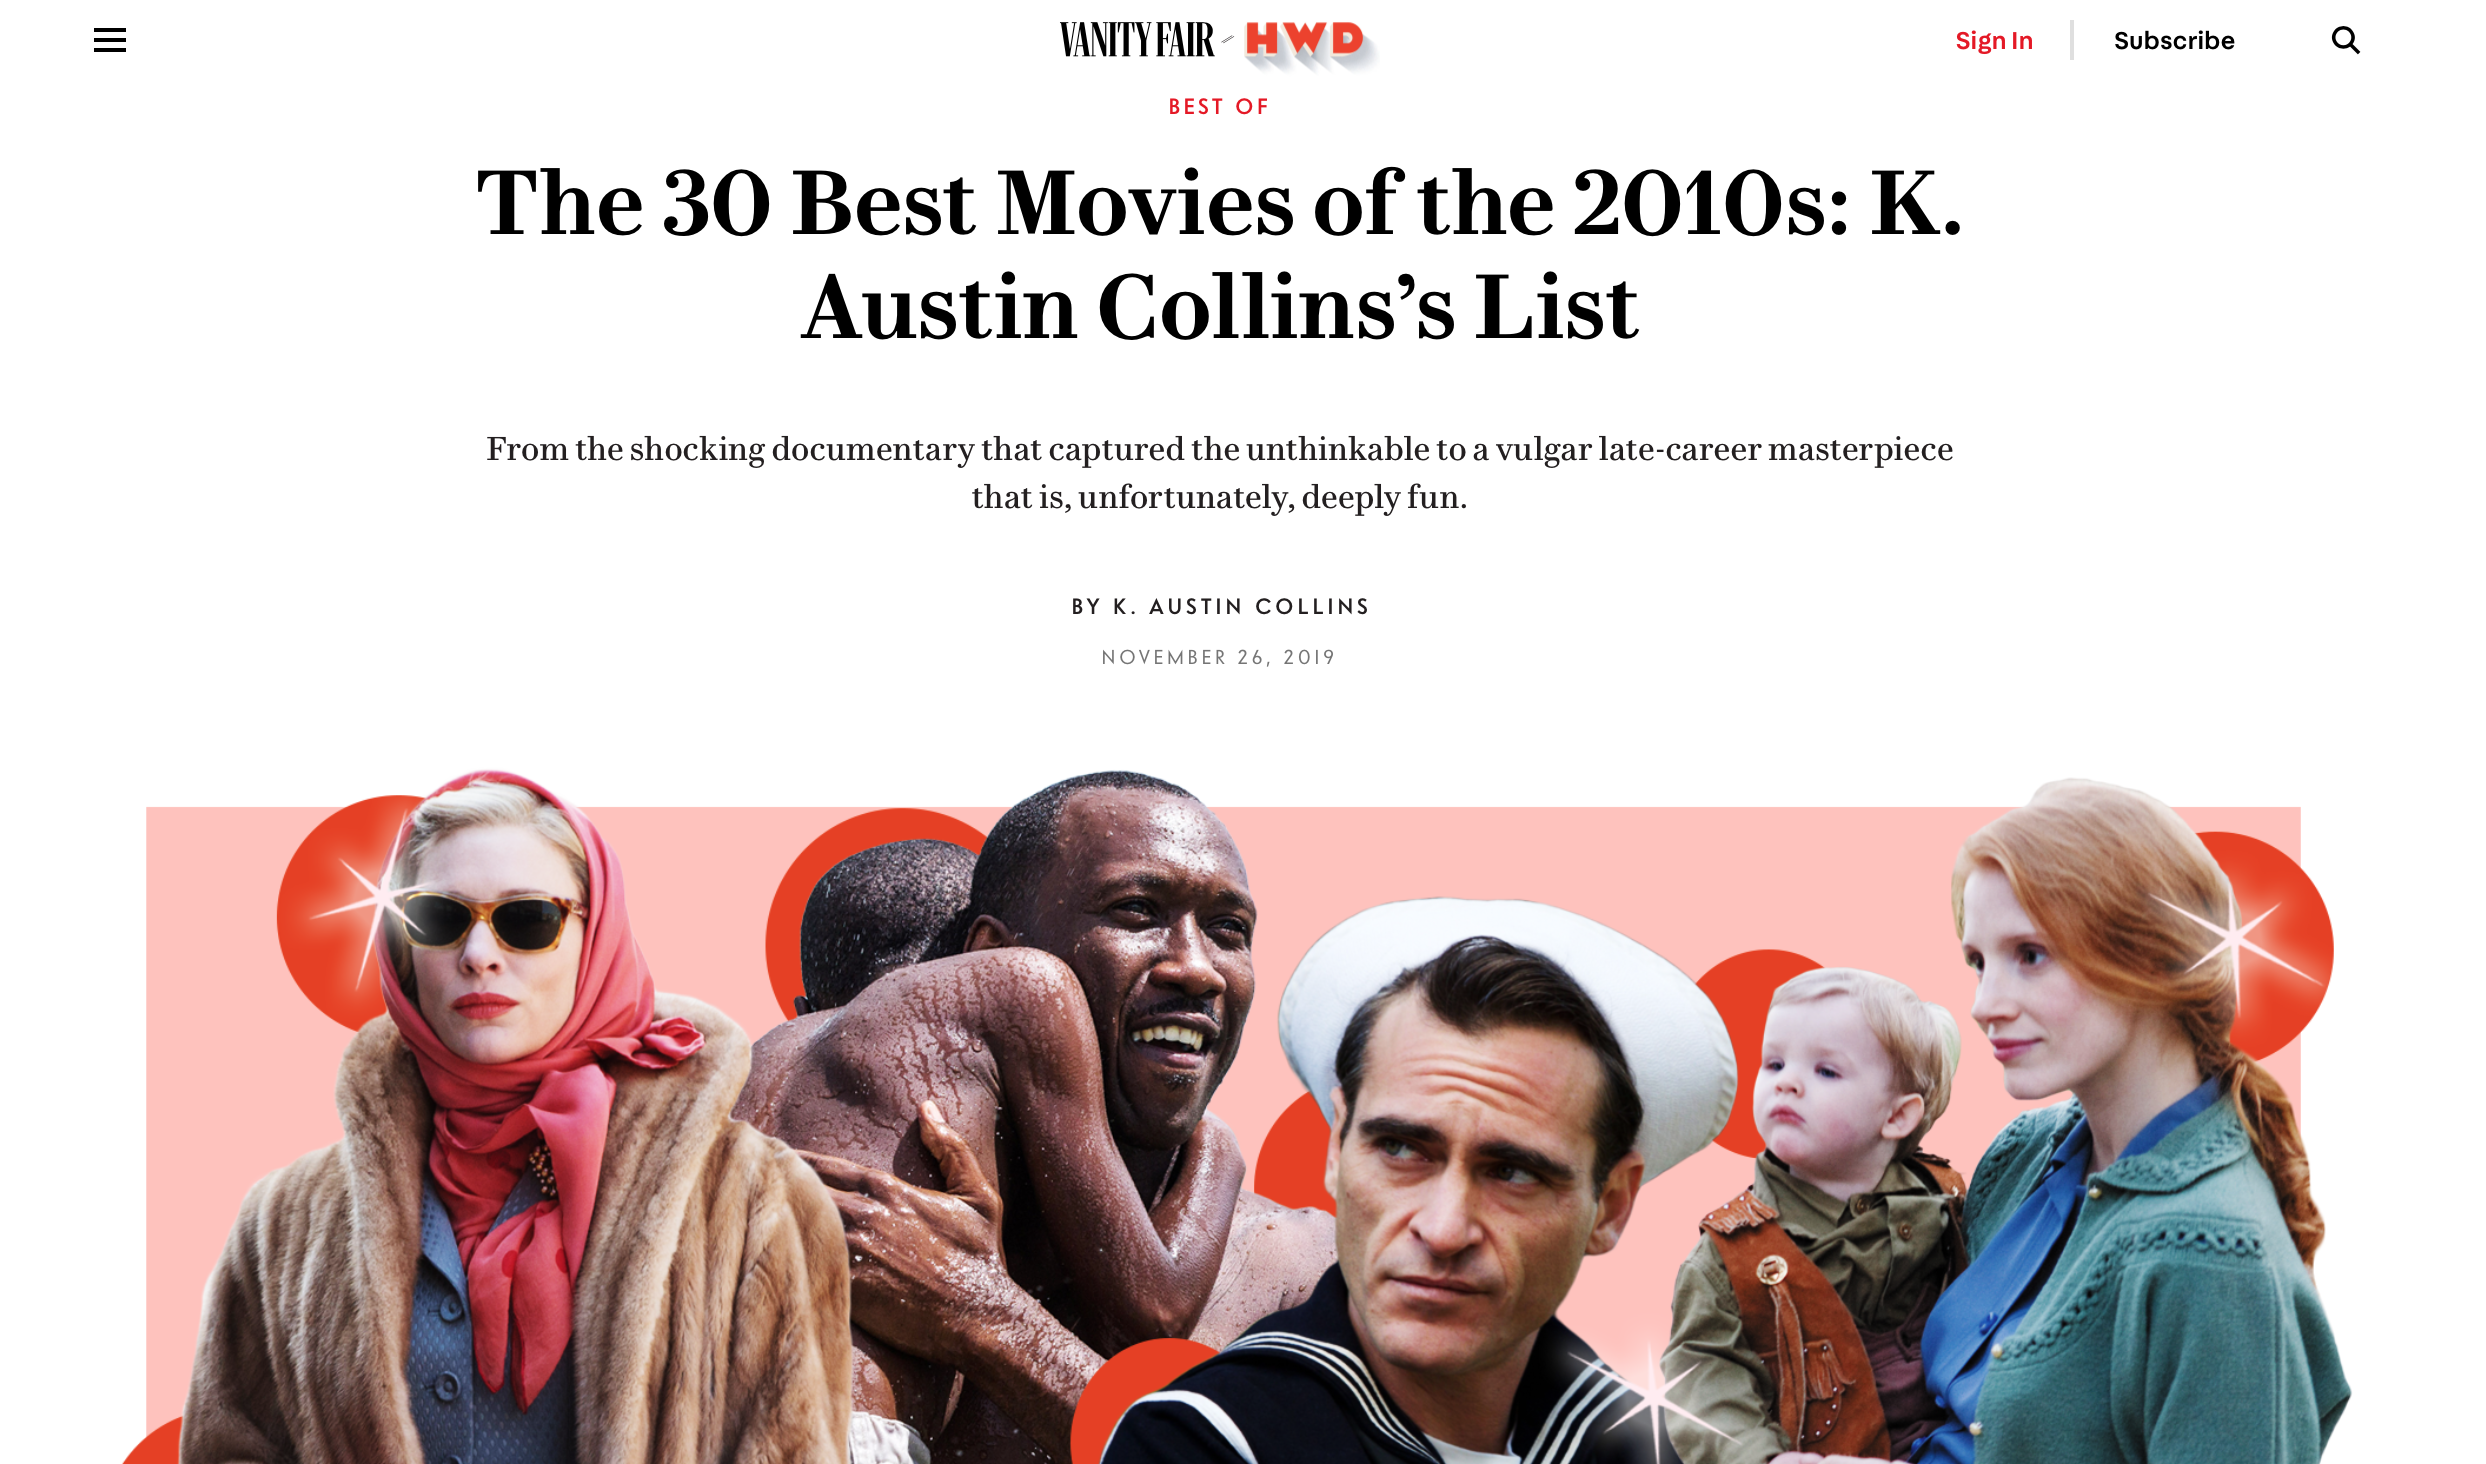 美国《名利场》杂志评出“2010年代30部最佳电影”